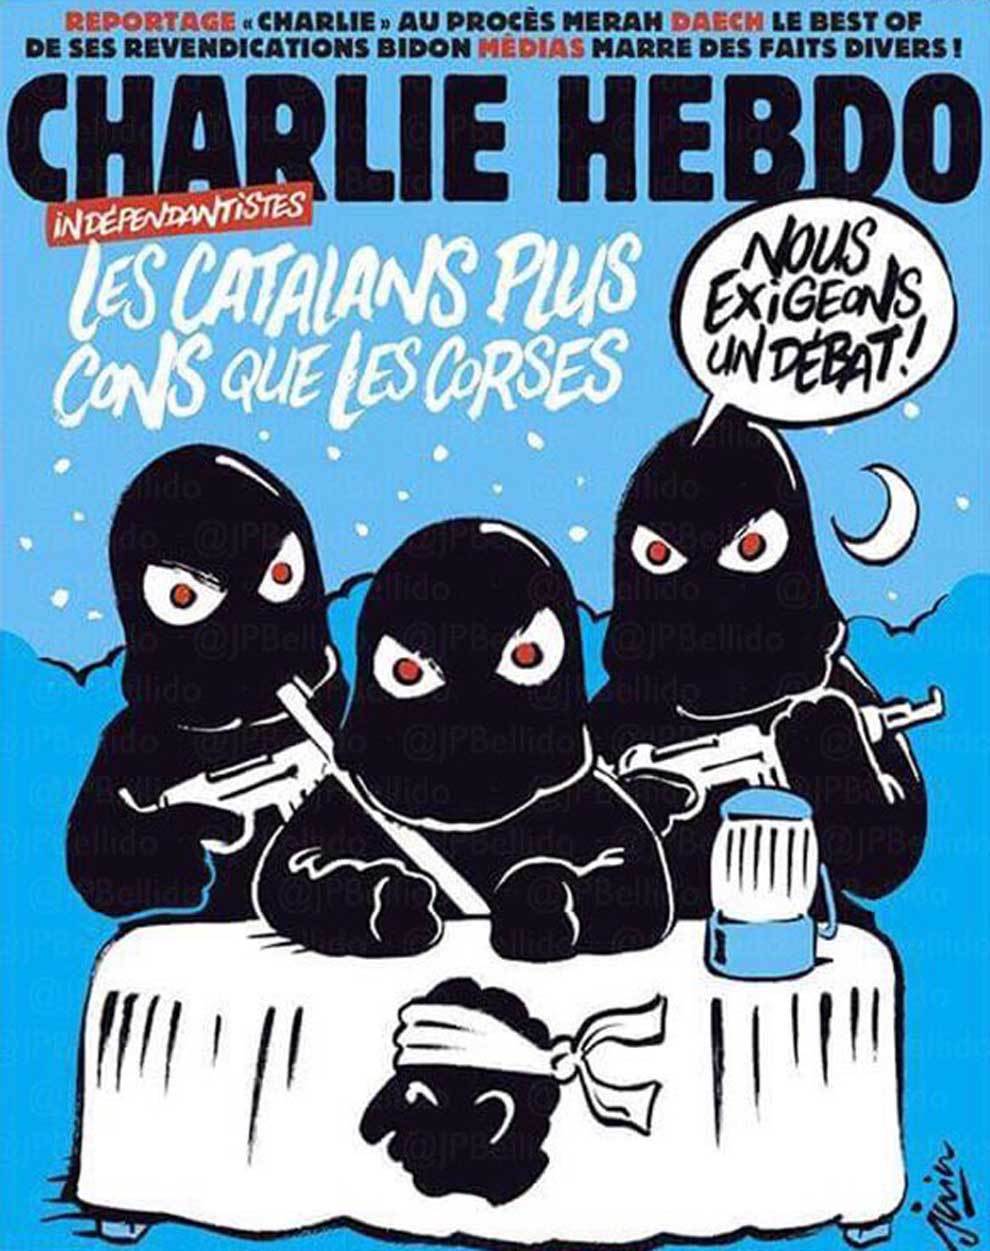 Charlie Hebdo: "Els catalans, més ximples que els corsos"